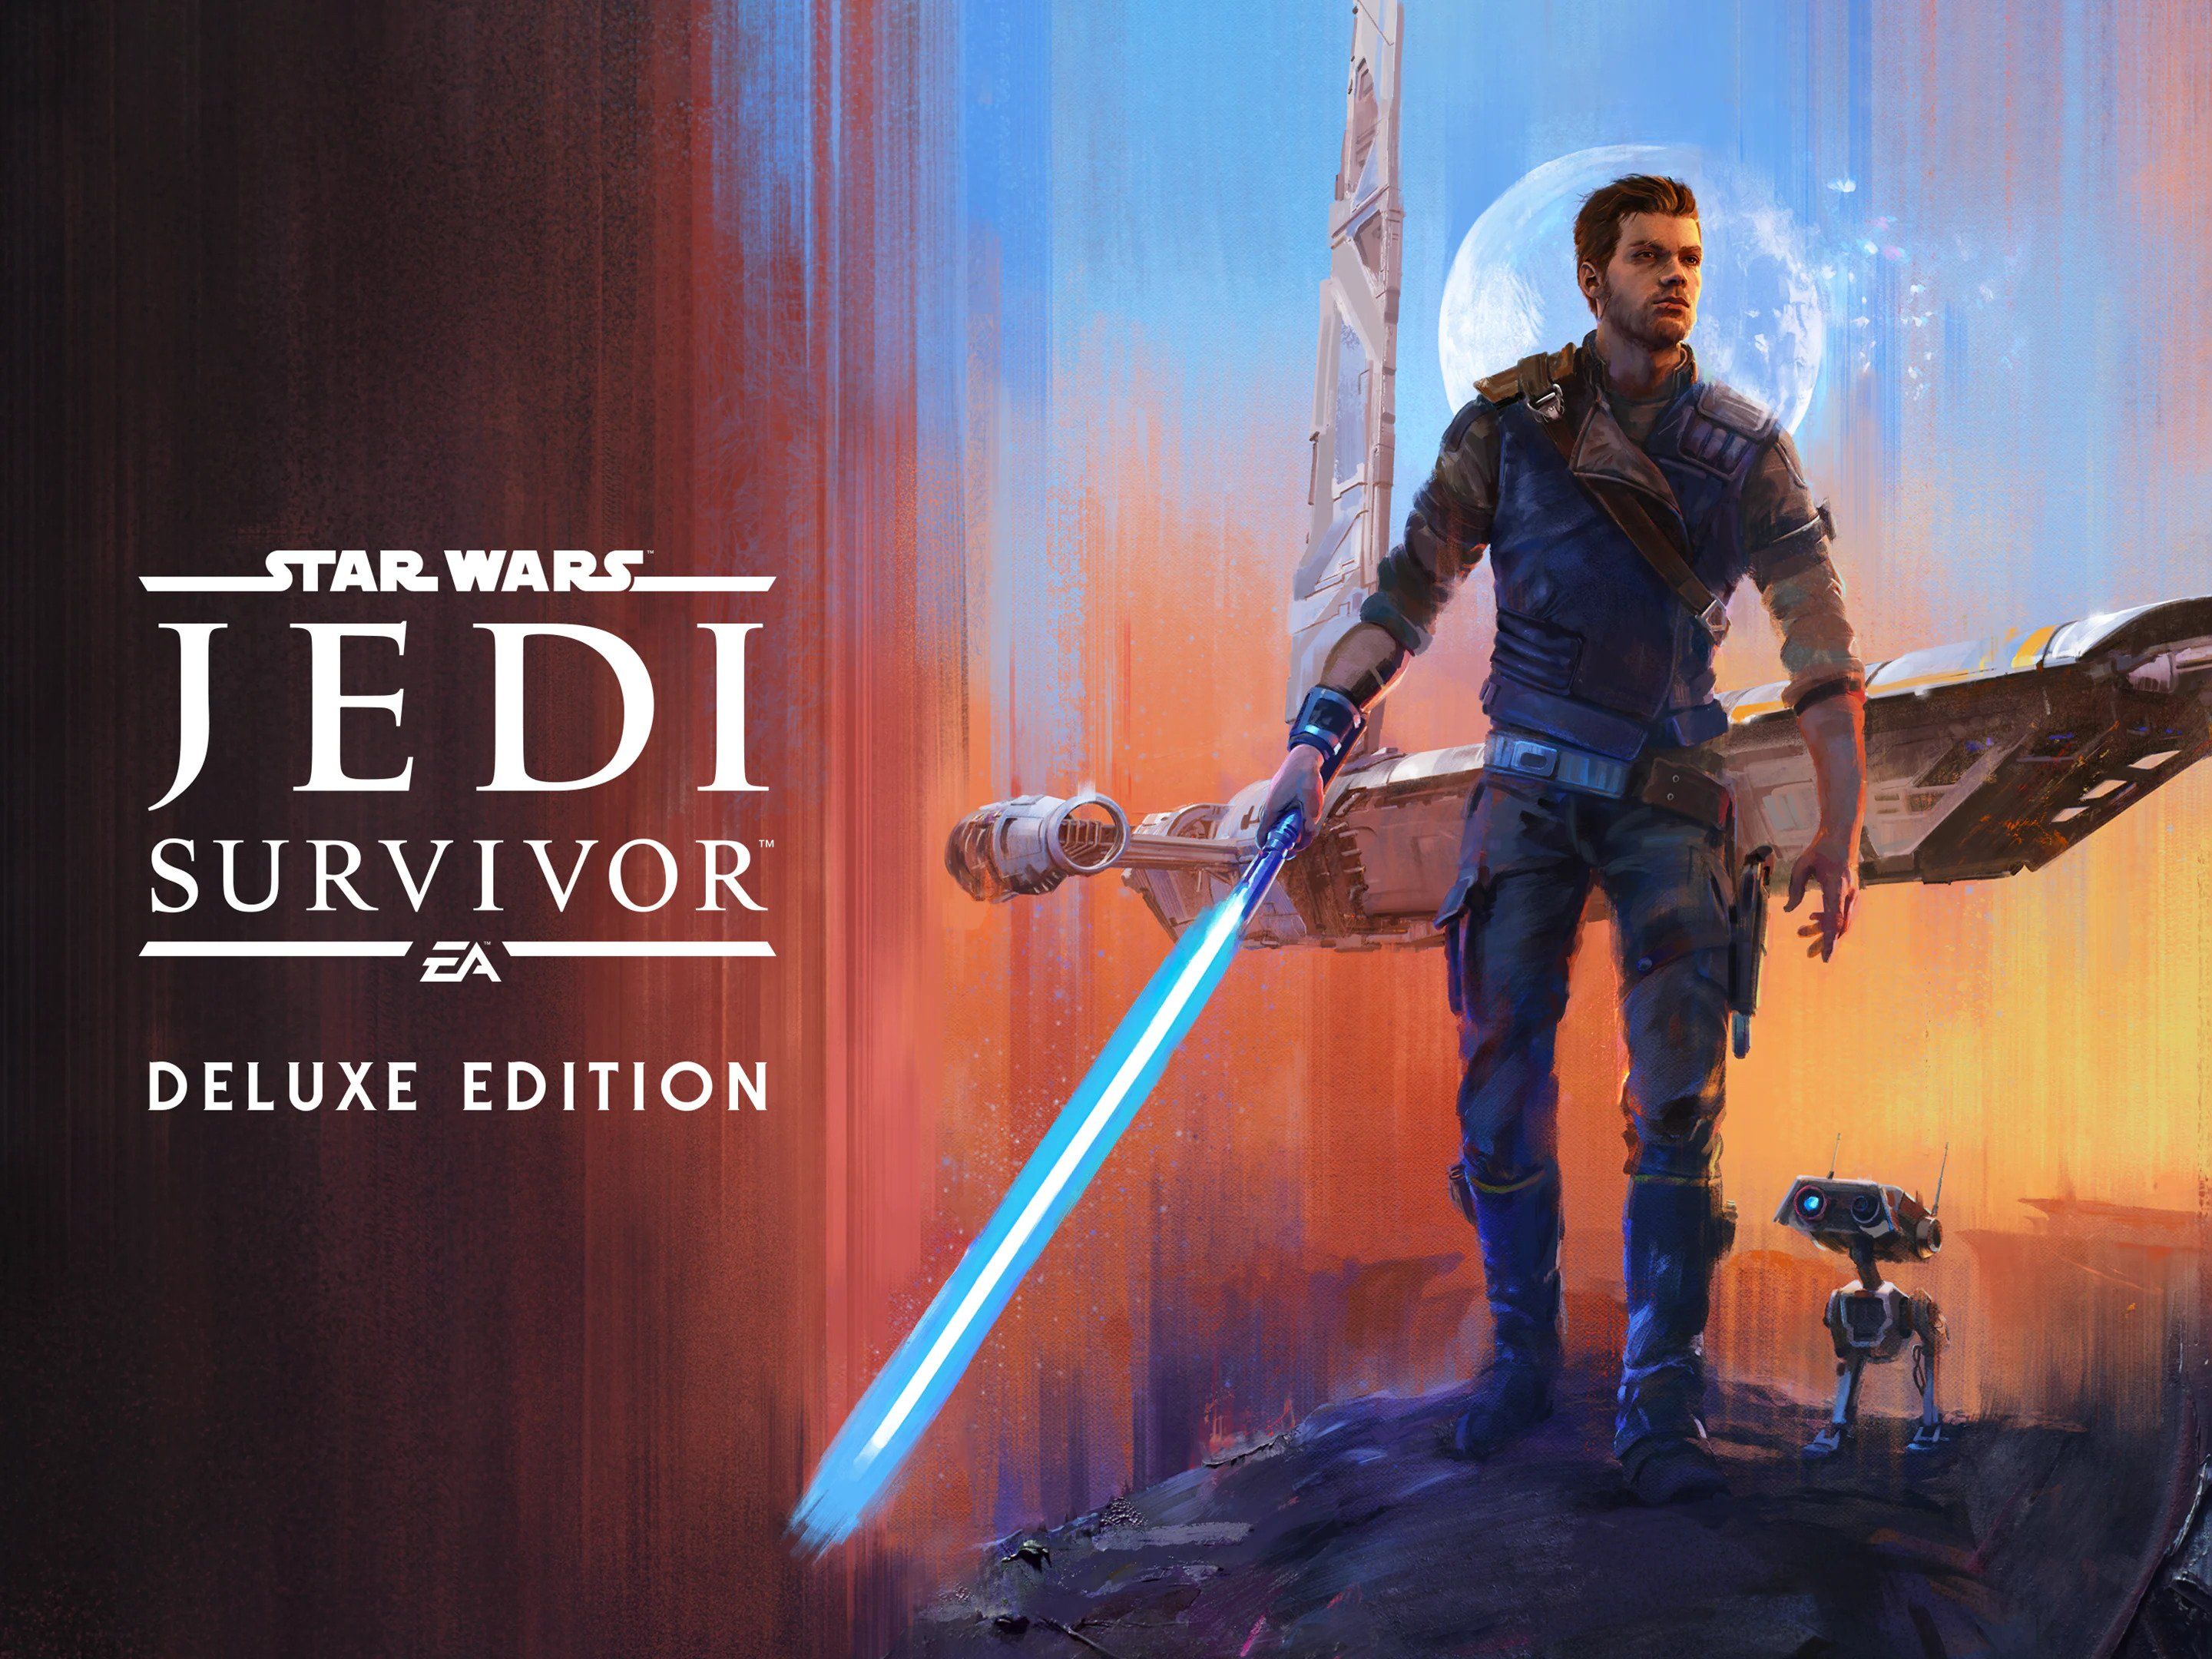 Star Wars Jedi: Survivor Pre - Order Bonus (EU), PS5